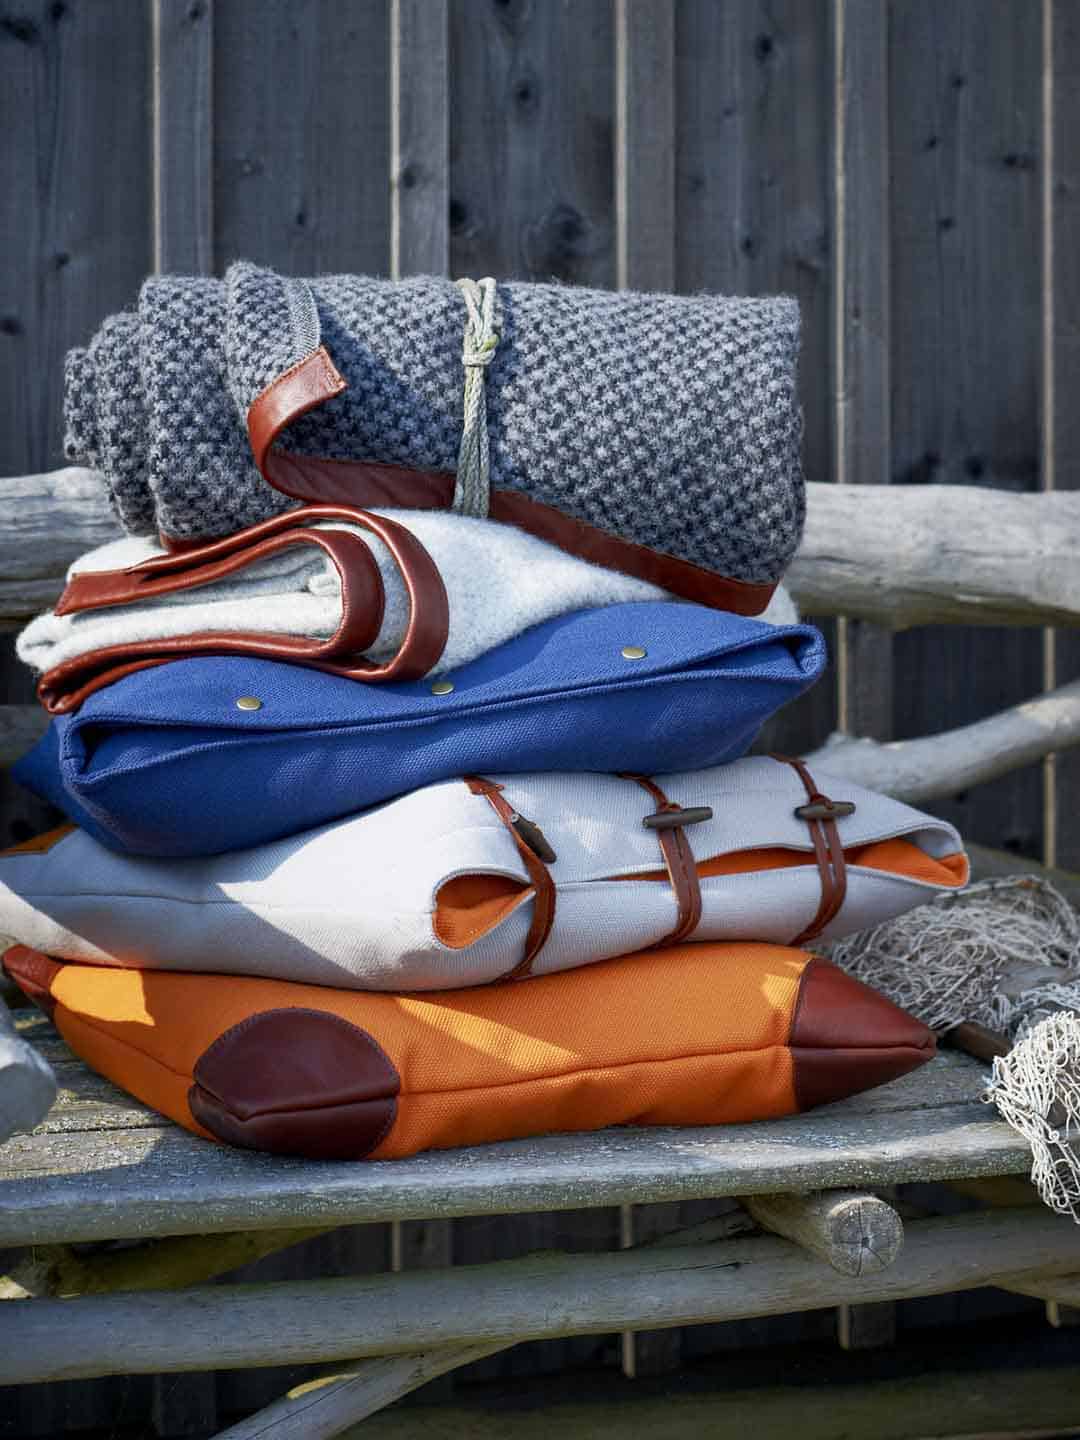 Декоративные подушки и плед премиум класса Skargaarden 50х50см на деревянной скамейке